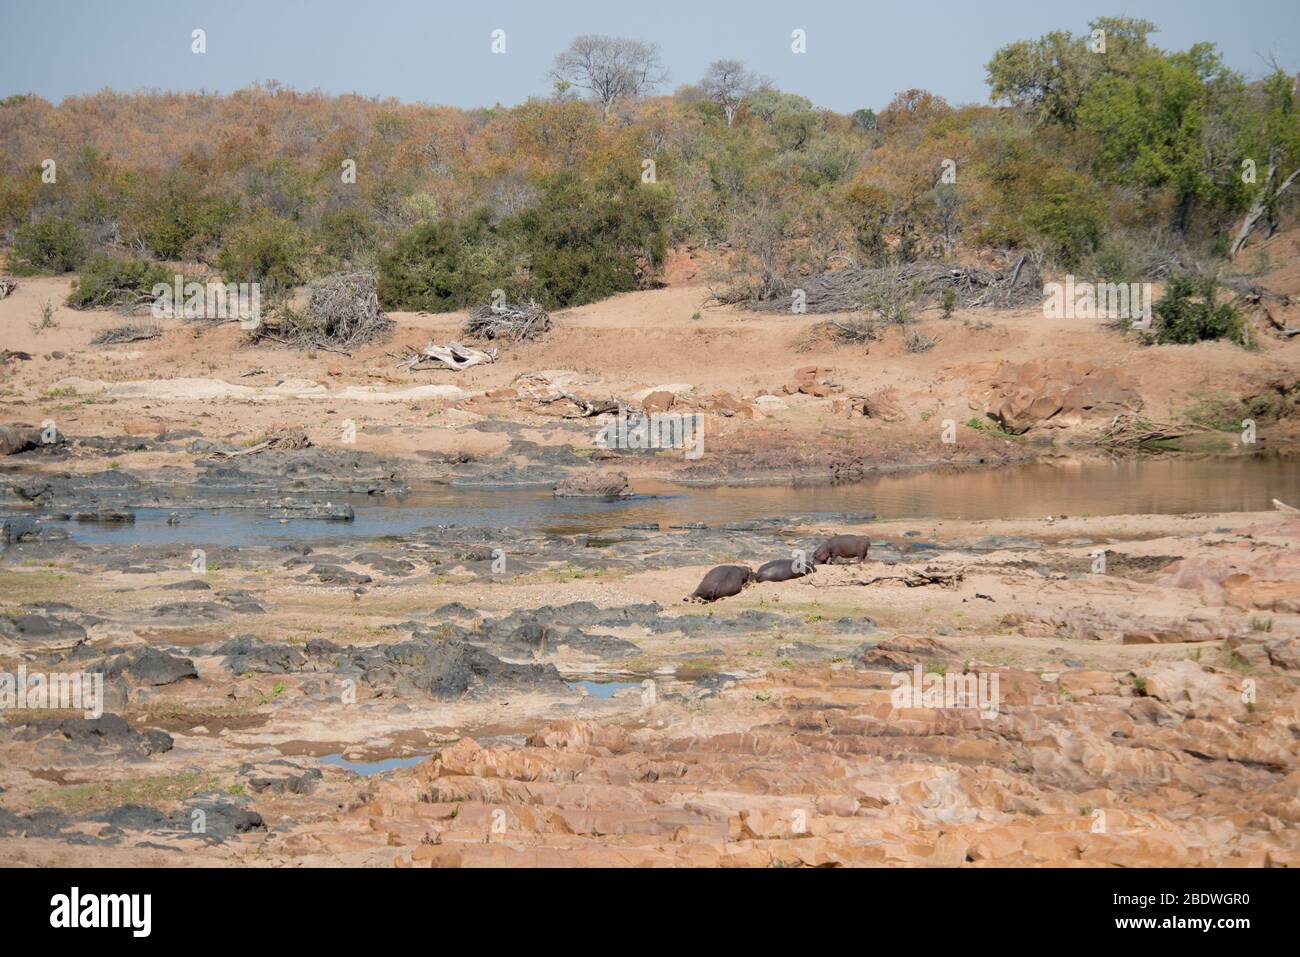 Hippopotame, Hippopotamus amphibius, vulnérable, sur la rive, parc national Kruger,Province de Mpumalanga, Afrique du Sud, Afrique Banque D'Images